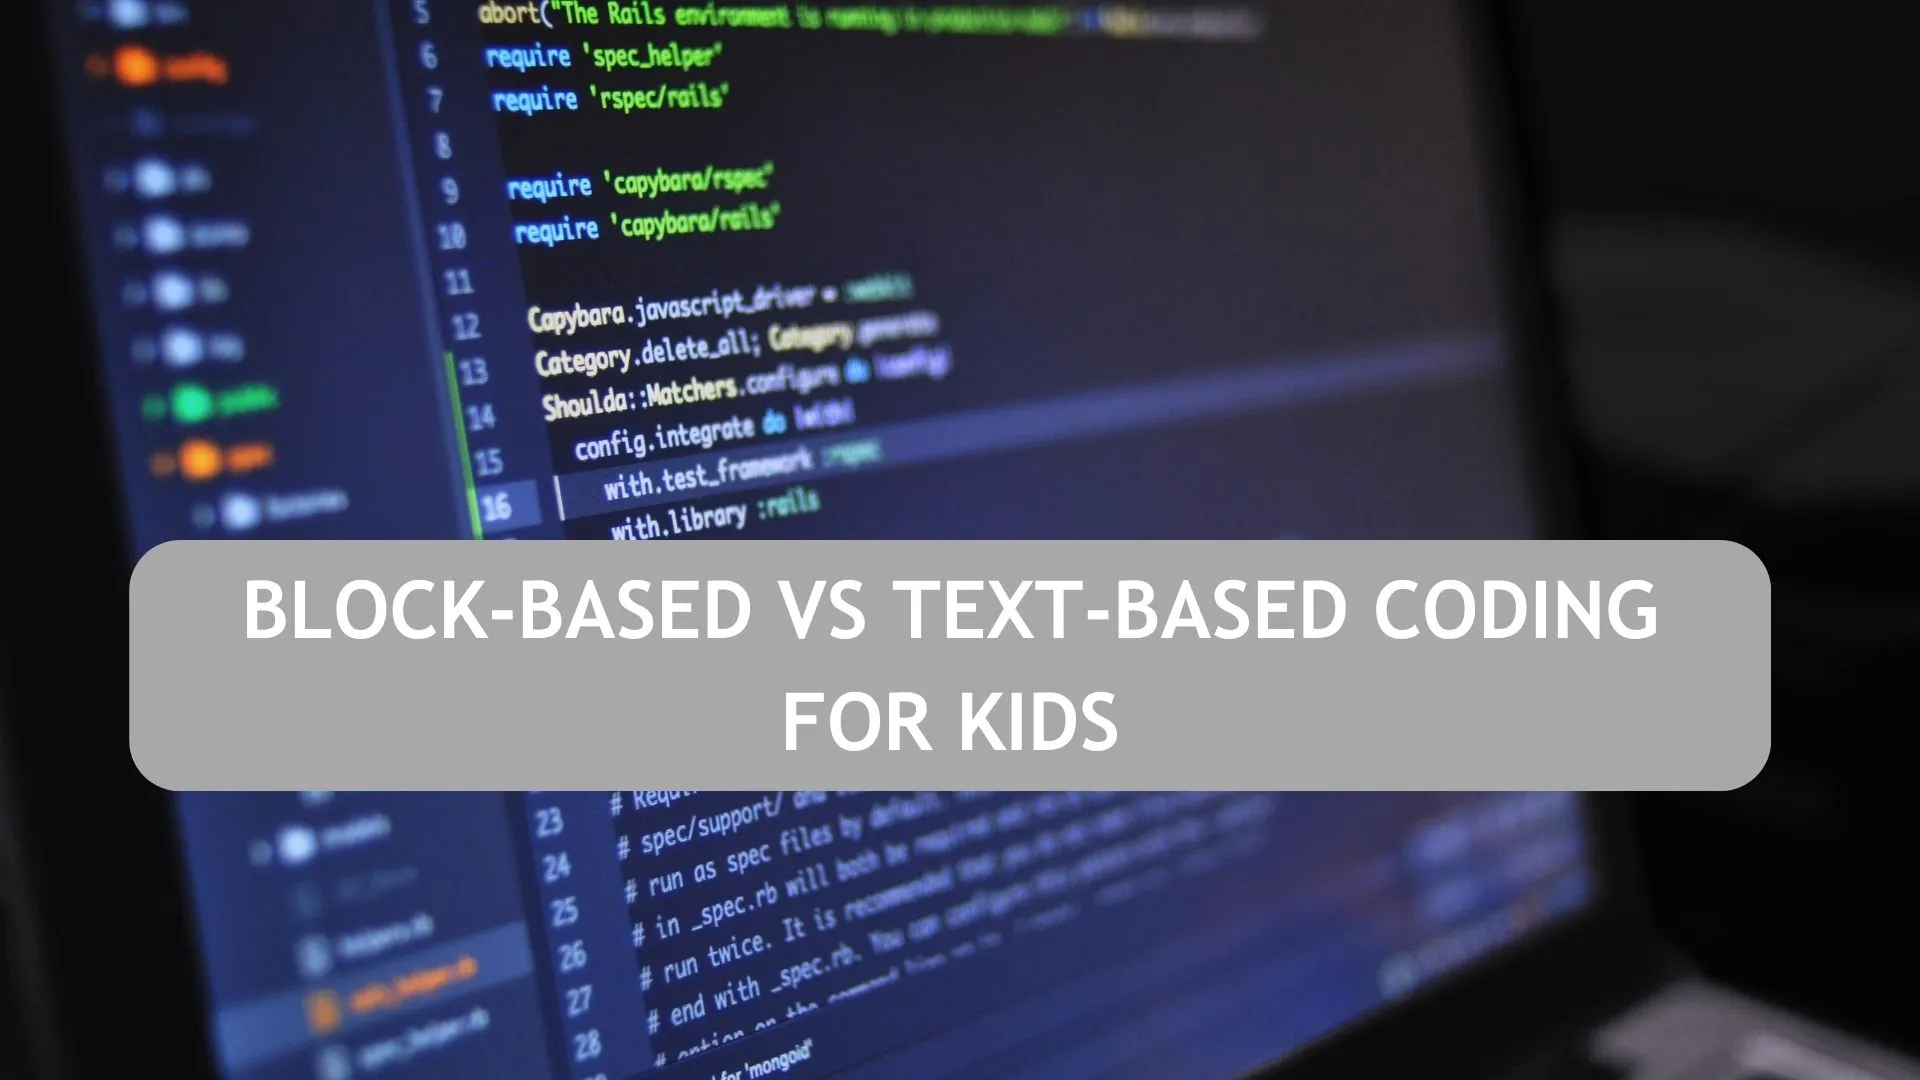 BLOCK-BASED VS TEXT-BASED CODING FOR KIDS